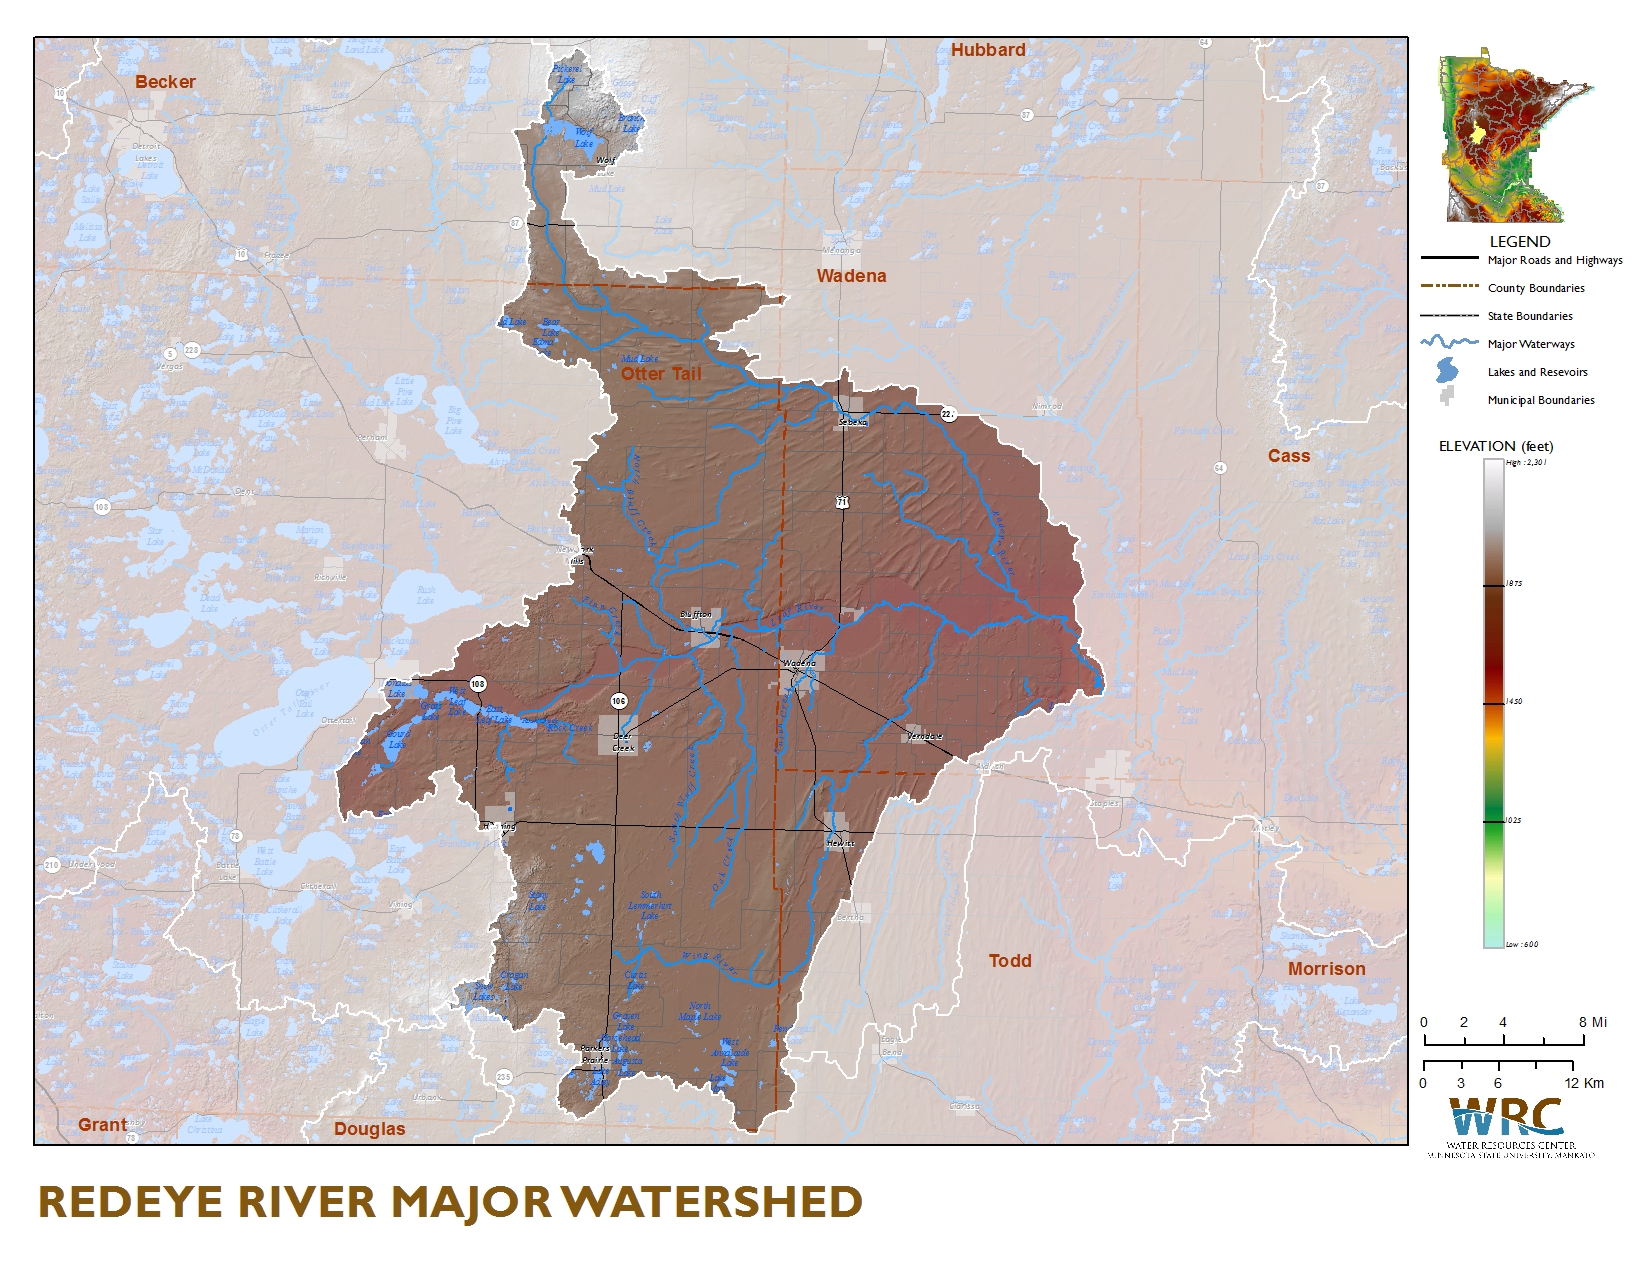 Sauk River Watershed Map